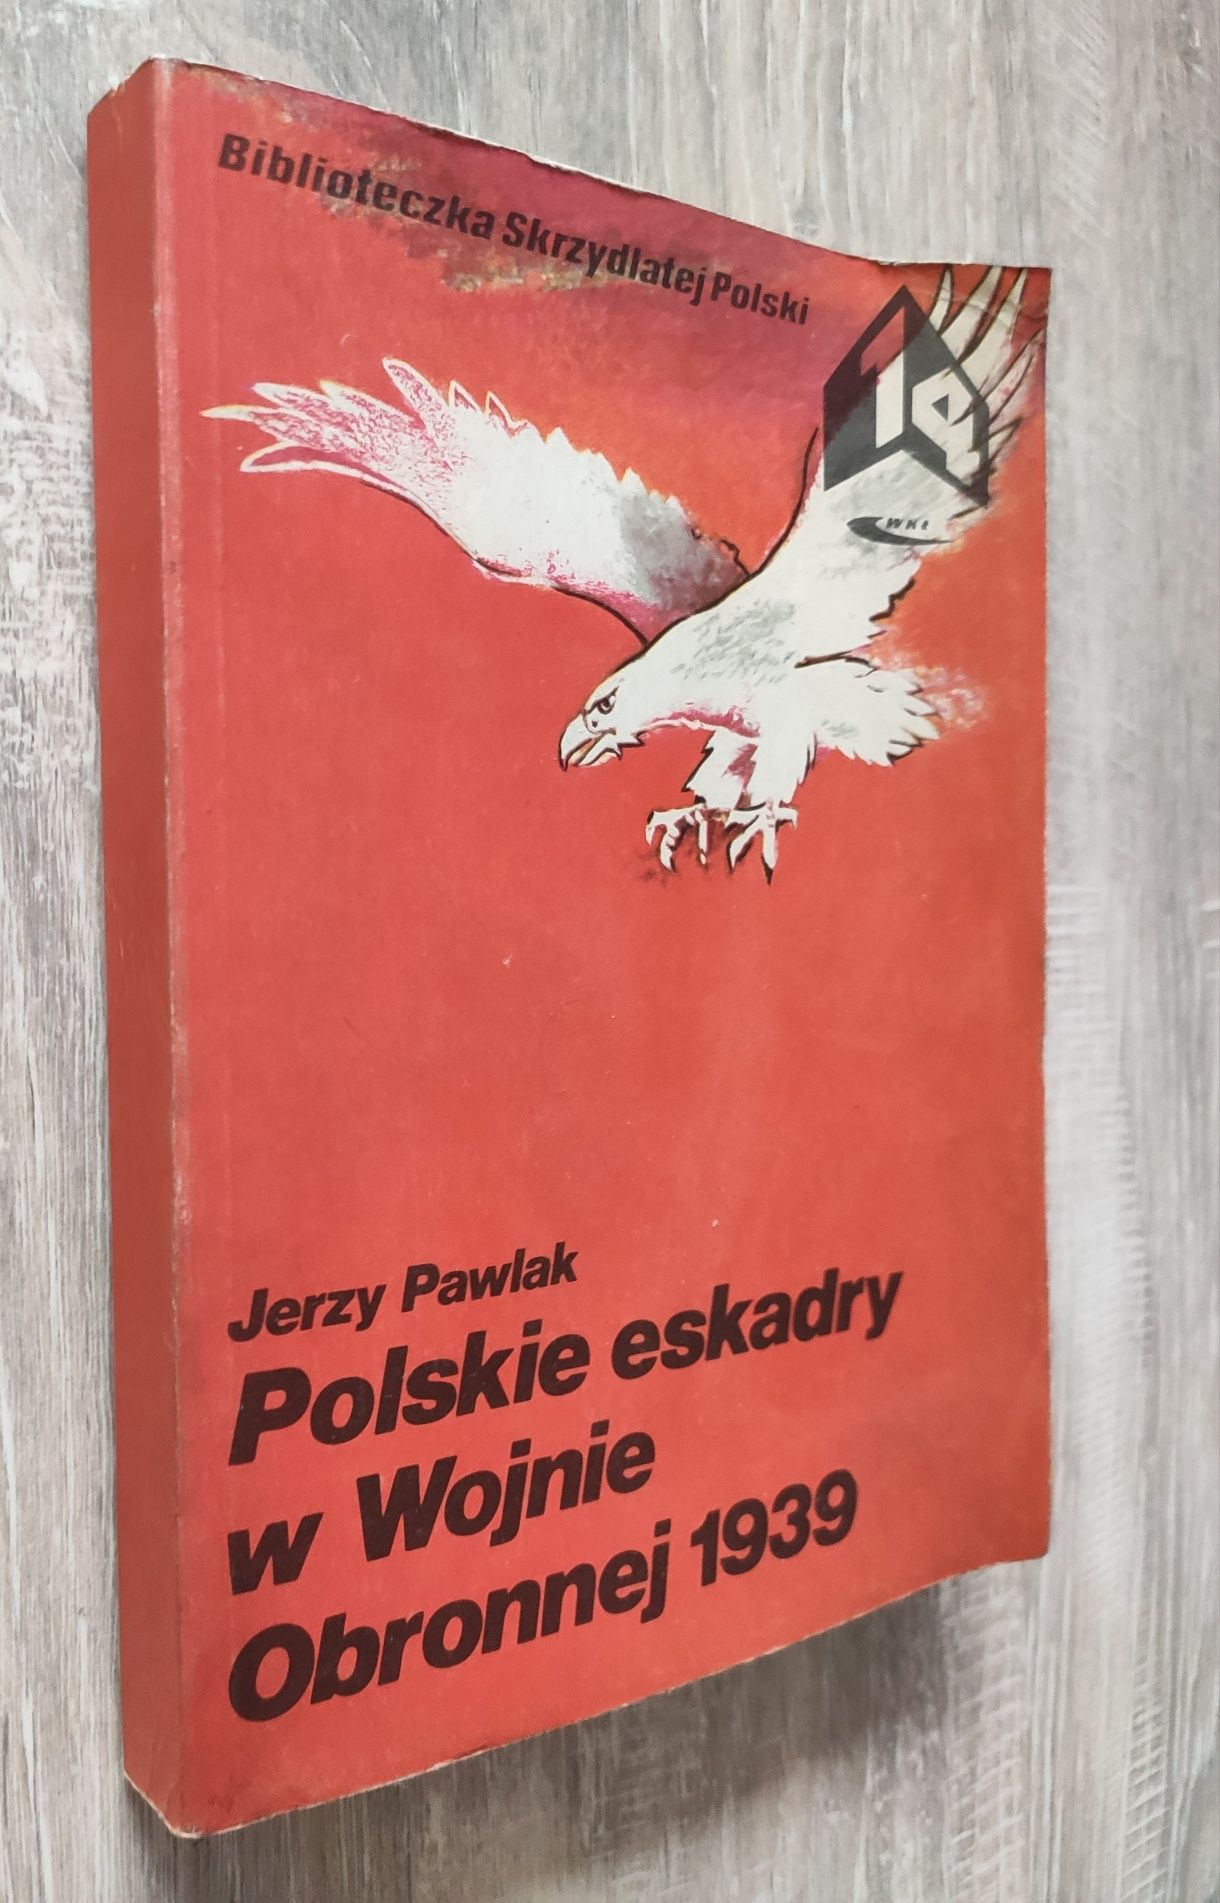 Polskie eskadry w wojnie obronnej 1939 Jerzy Pawlak